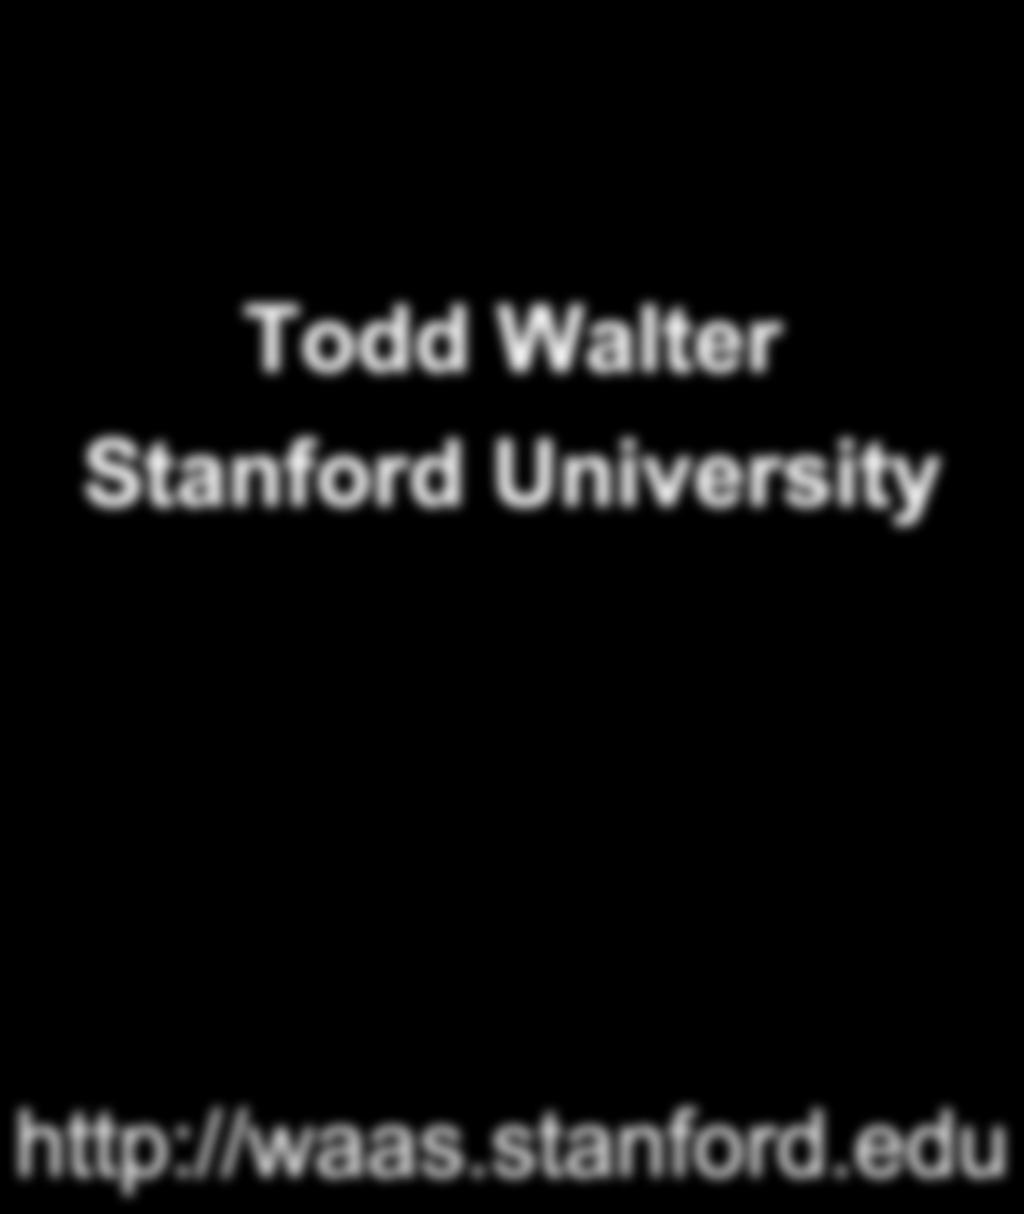 (WAAS) Stanford